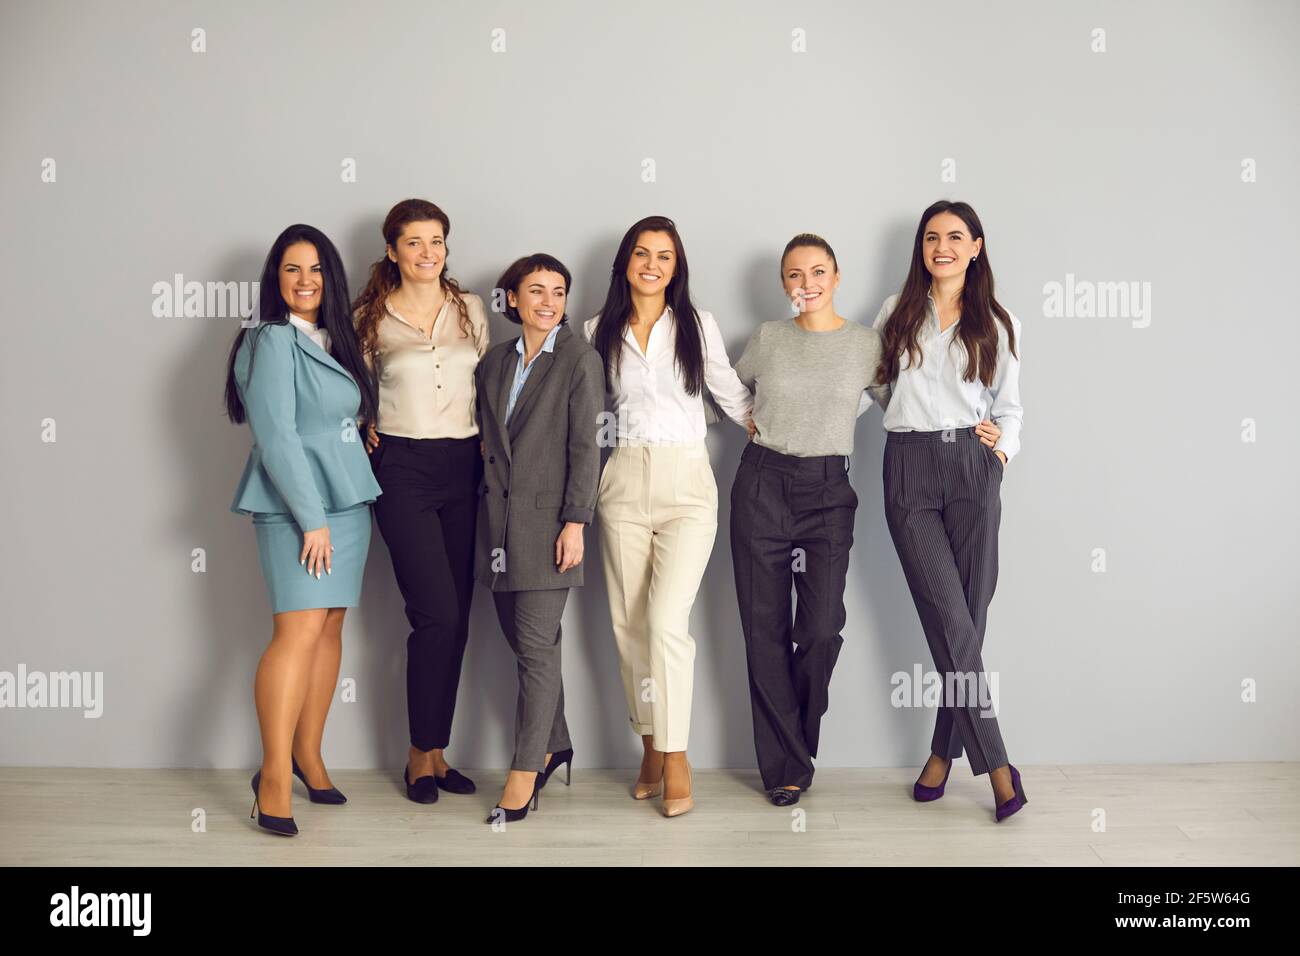 Gruppenportrait von erfolgreichen und stilvollen Business-Frauen posiert vor grauen Wand Hintergrund. Stockfoto